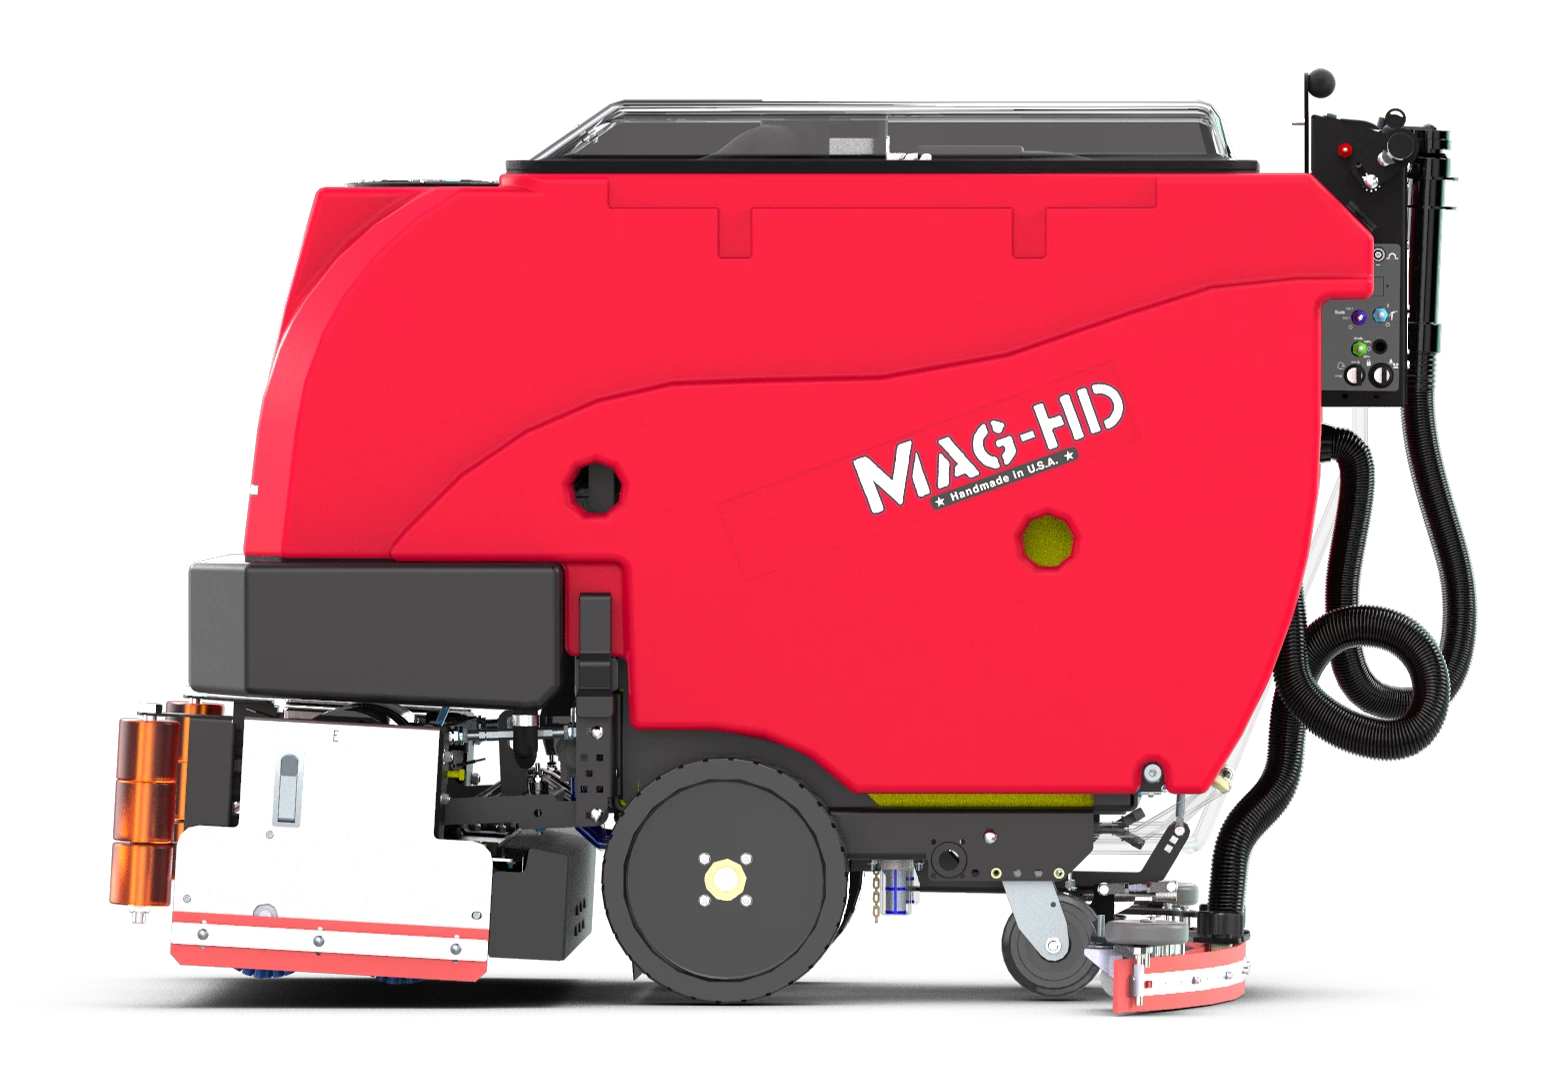 Ročno vodeni stroj za mokro čiščenje tal Factory Cat Mag HD 30D